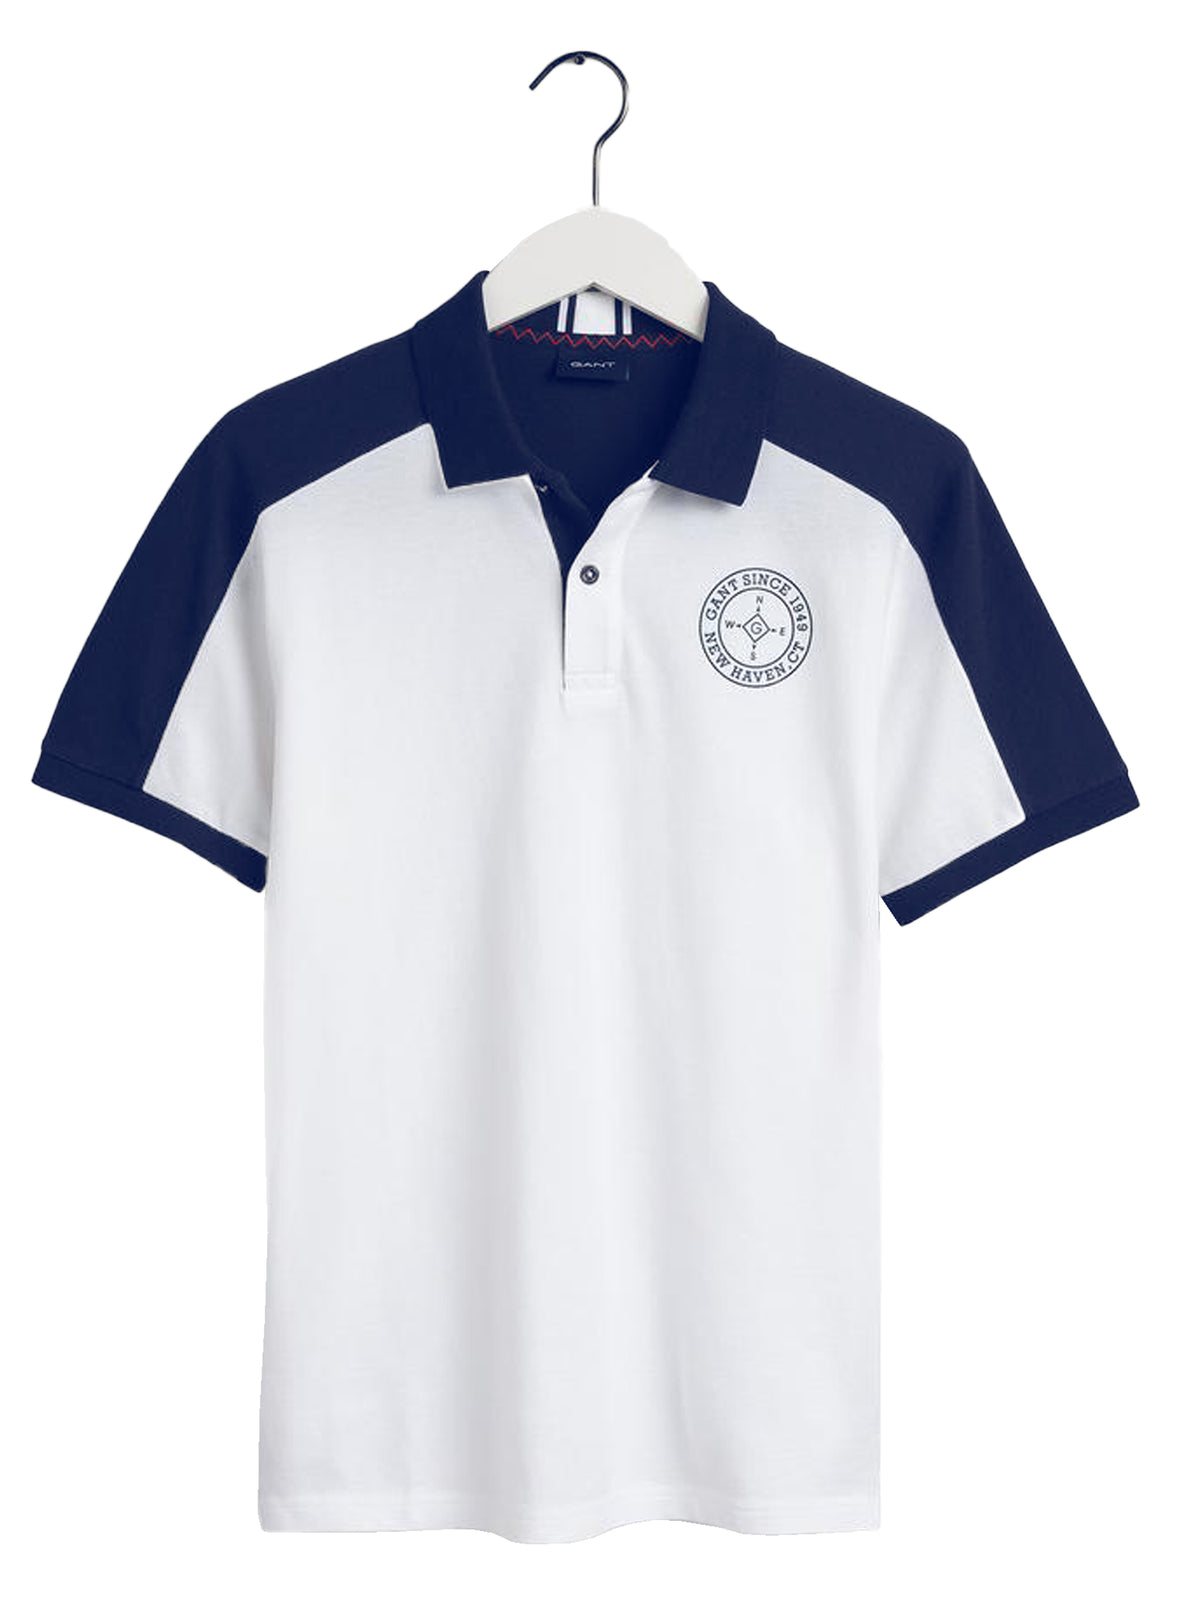 GANT_POLO_NAUTIC Gant | Mens Nautical Polo Shirt GANT RAWDENIM